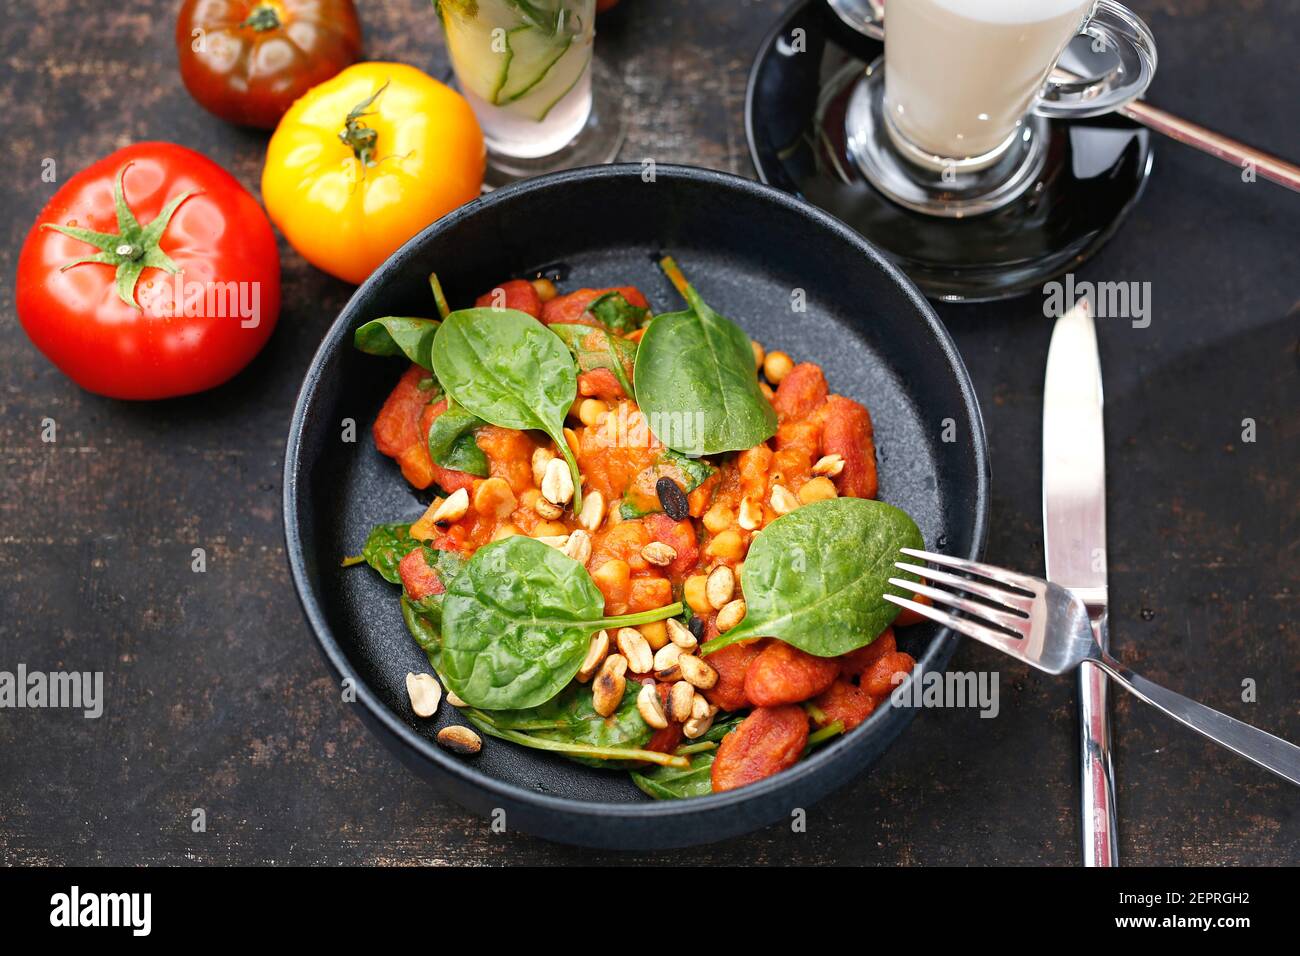 Tomaten gebacken mit Spinat und Erdnüssen. Essen auf einem Teller serviert, Essen Styling, Serviervorschläge, kulinarische Fotografie. Stockfoto